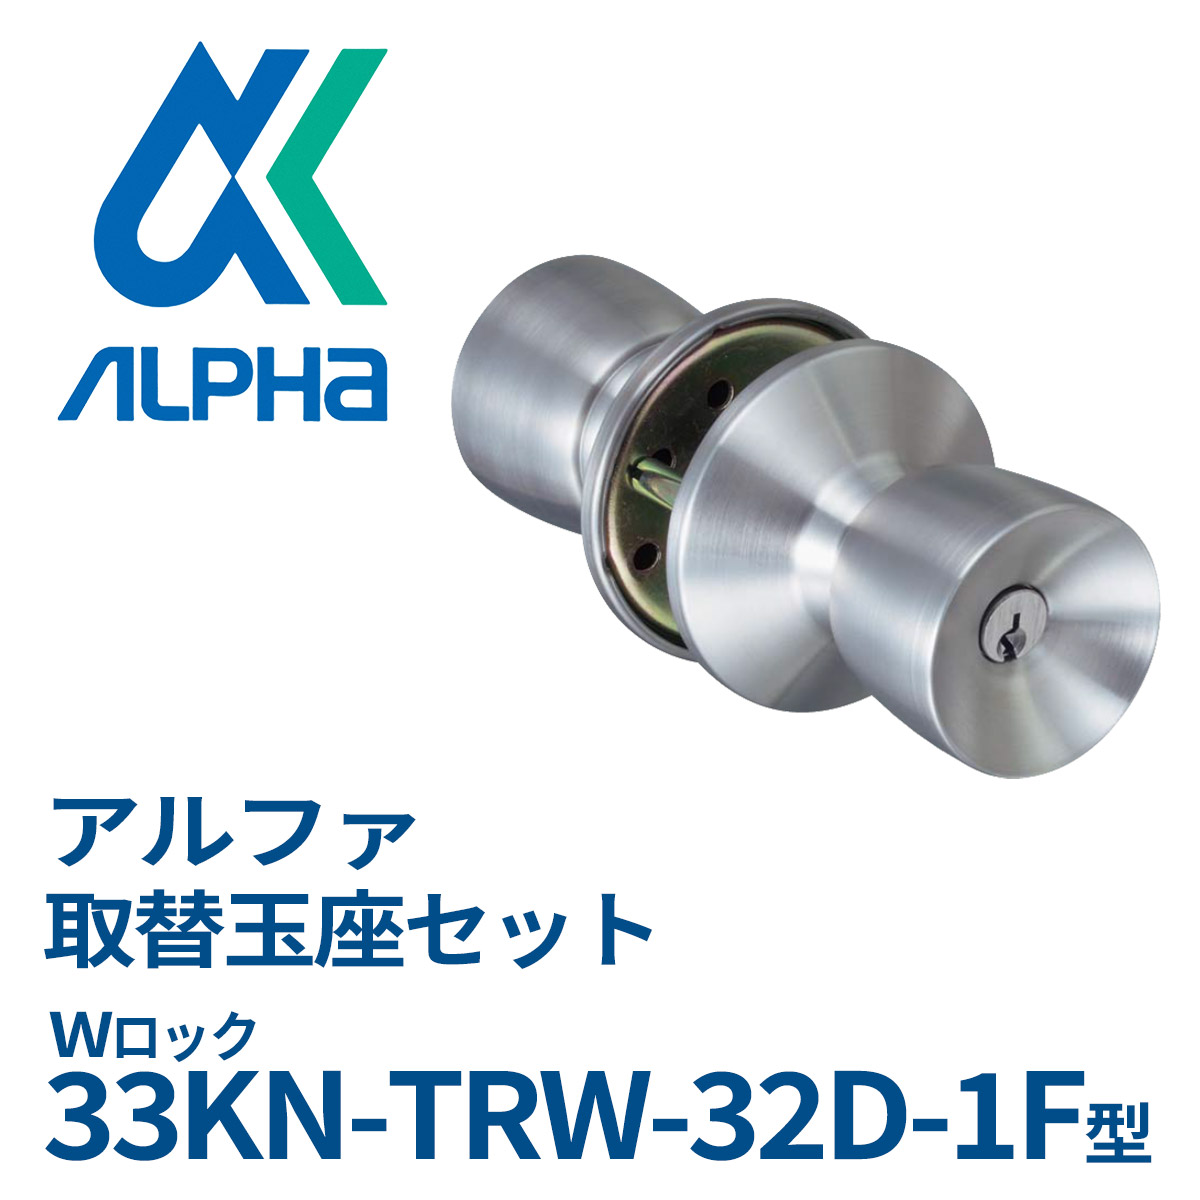 ALPHA(アルファ) W-LOCKシリーズ 取替用インテグラル錠 33S05-TRW32D